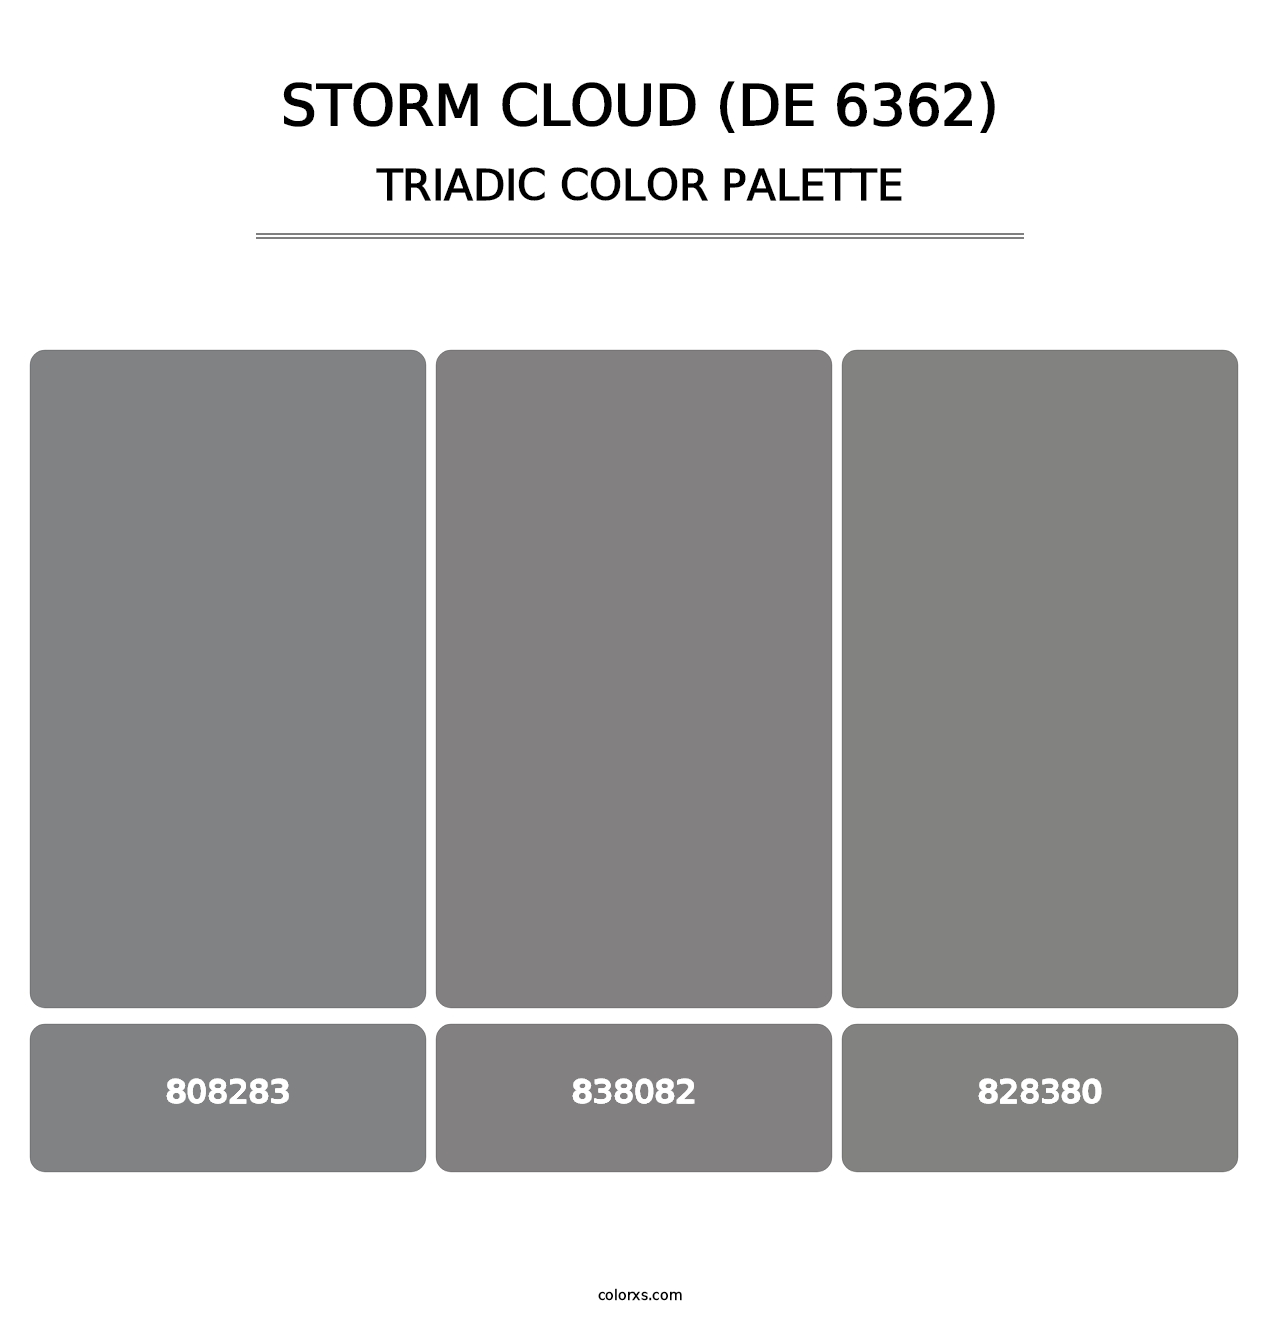 Storm Cloud (DE 6362) - Triadic Color Palette